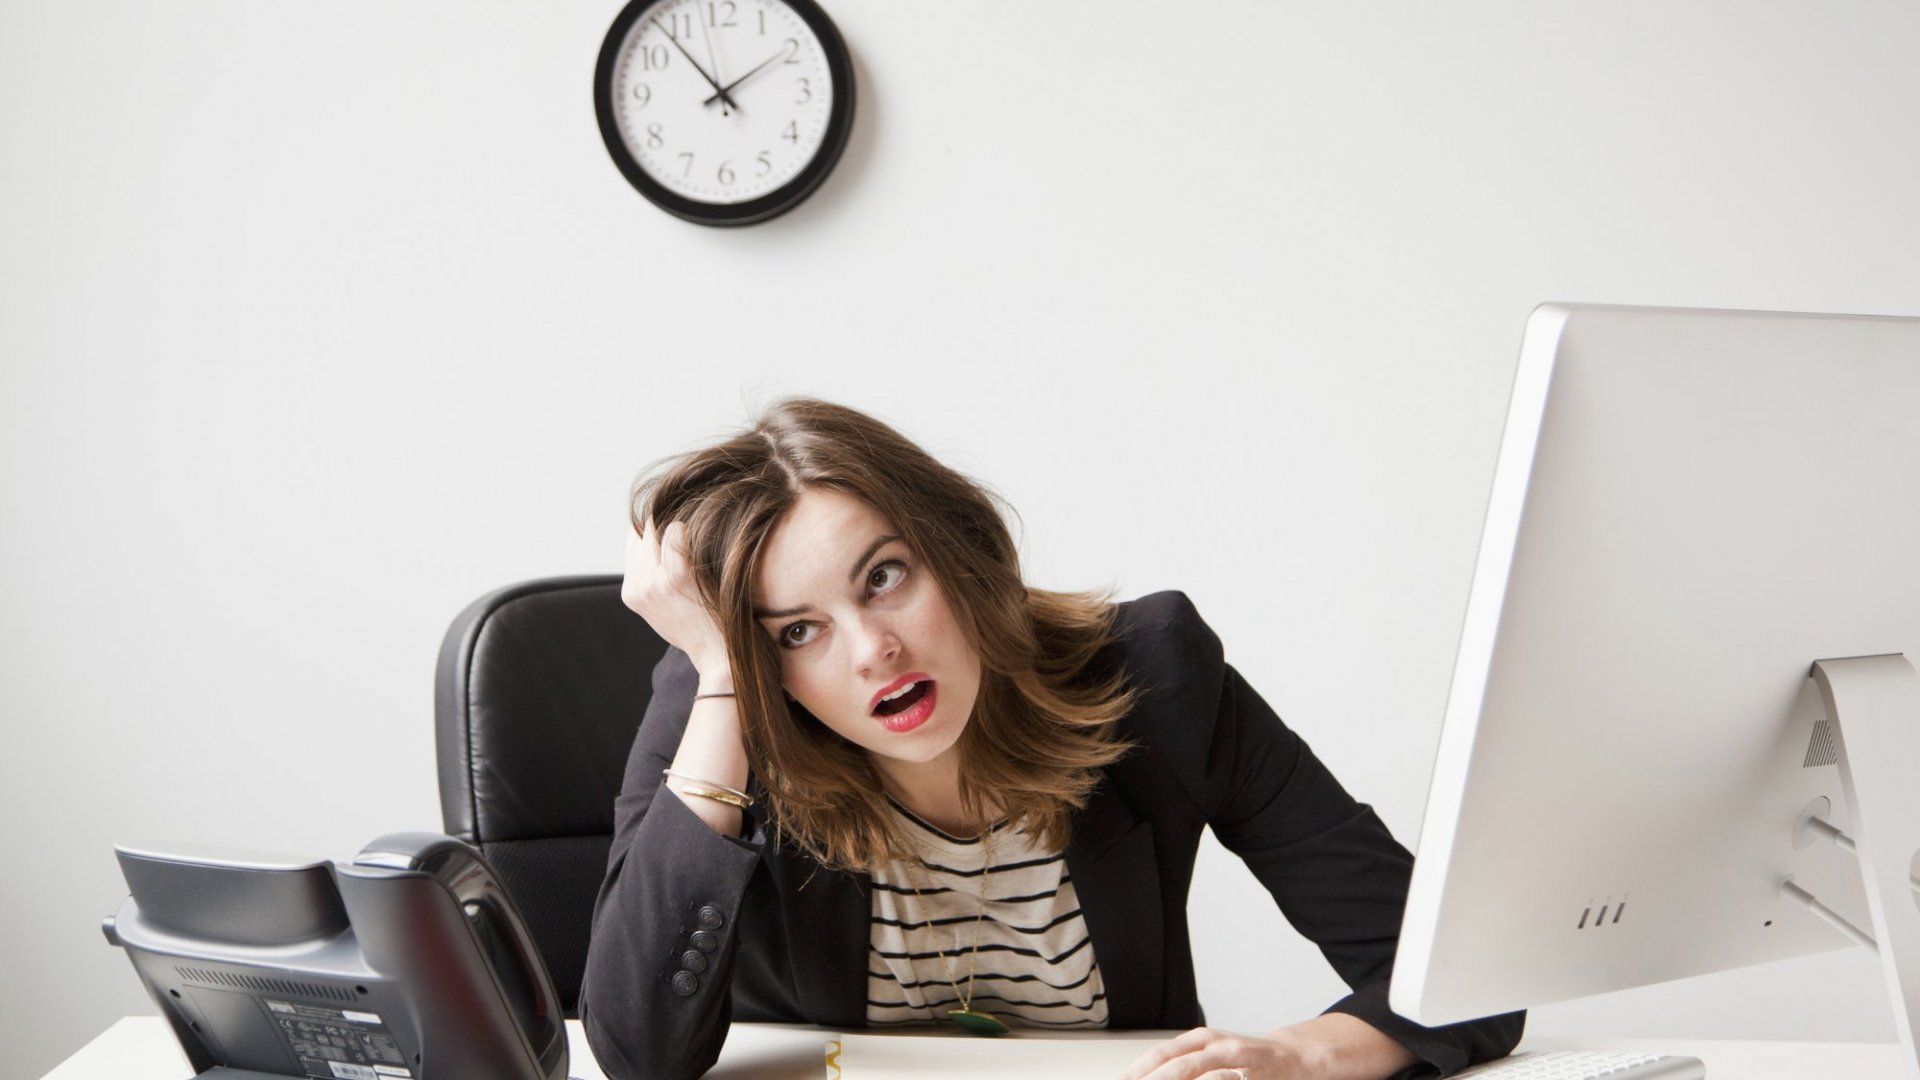 အလုပ်မှာ စိတ်ဖိစီးမှုတွေအရမ်းများပြီး ဖိအားတွေကြောင့်စိတ်ညစ်ရတဲ့အခါ ဘယ်လိုဖြေရှင်းမလဲ?